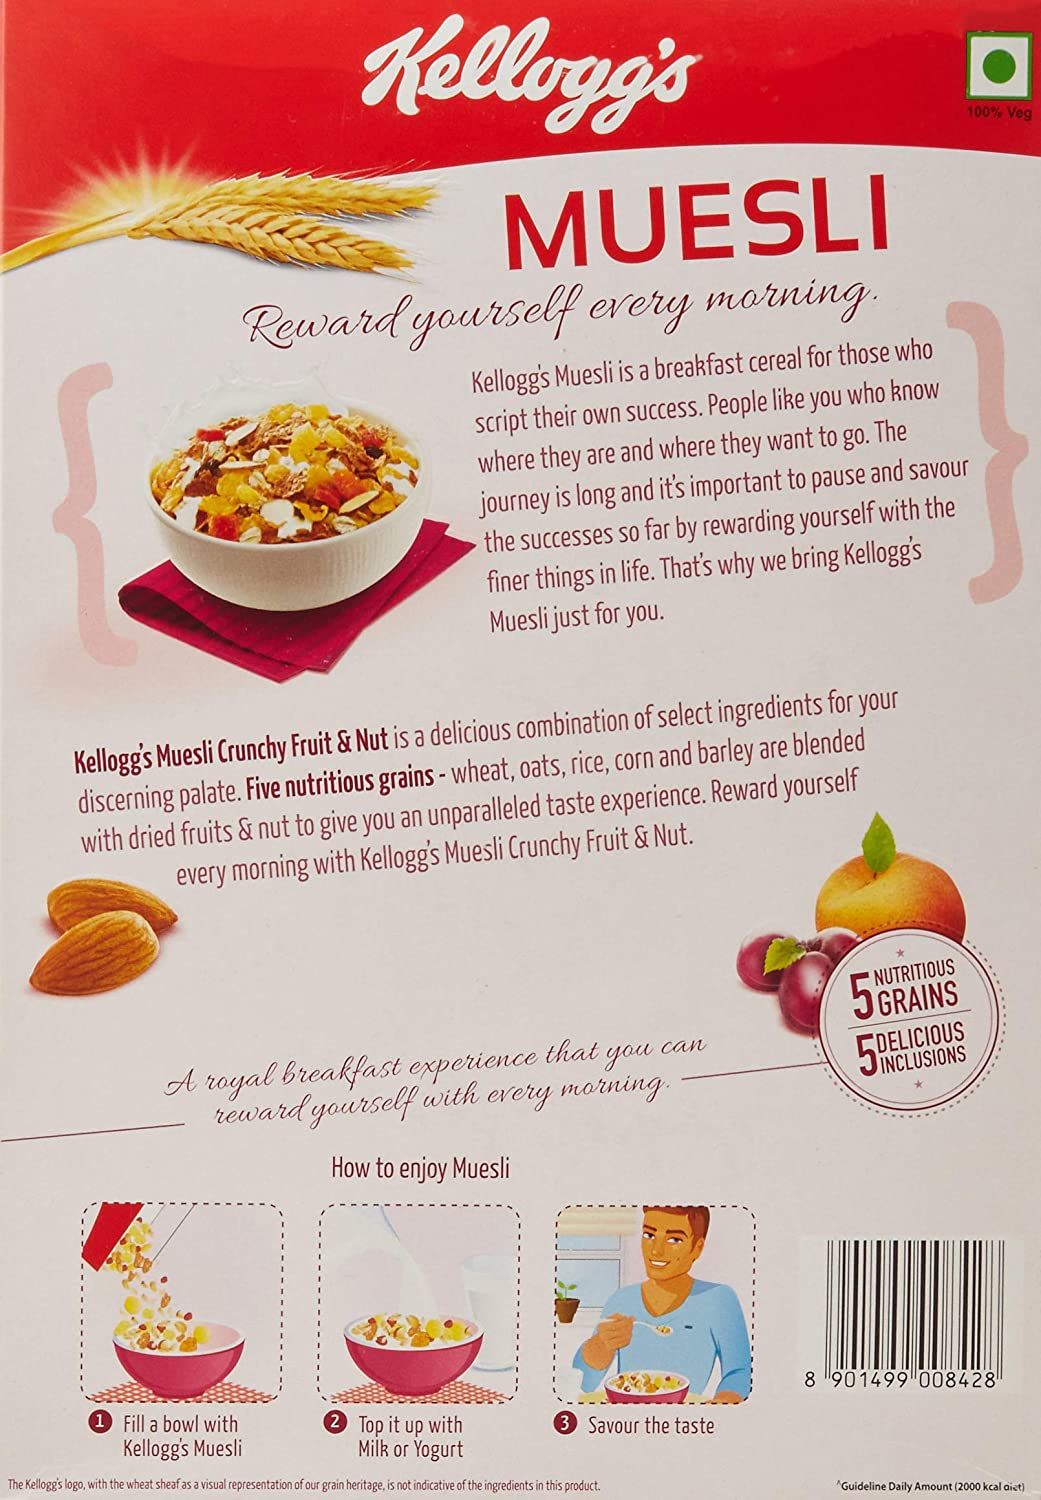 Kellogg's Muesli Crunchy Fruit & Nut Image